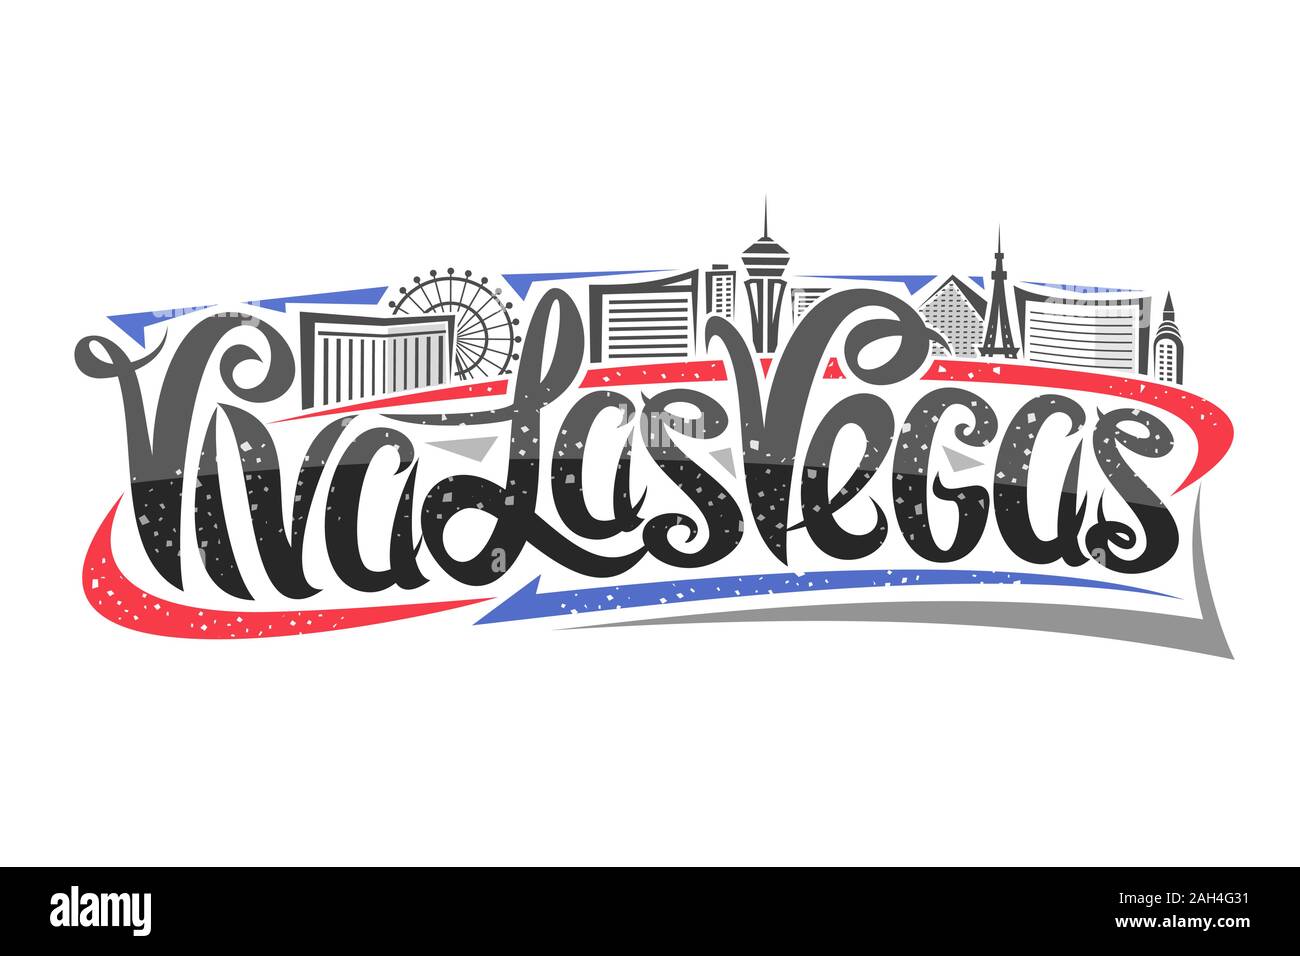 Vektor logo für Las Vegas, dekorative Umrisse Abbildung mit abstrakten Architektur Eiffelturm und Riesenrad, elegante Schriftzug - Viva Las Vega Stock Vektor